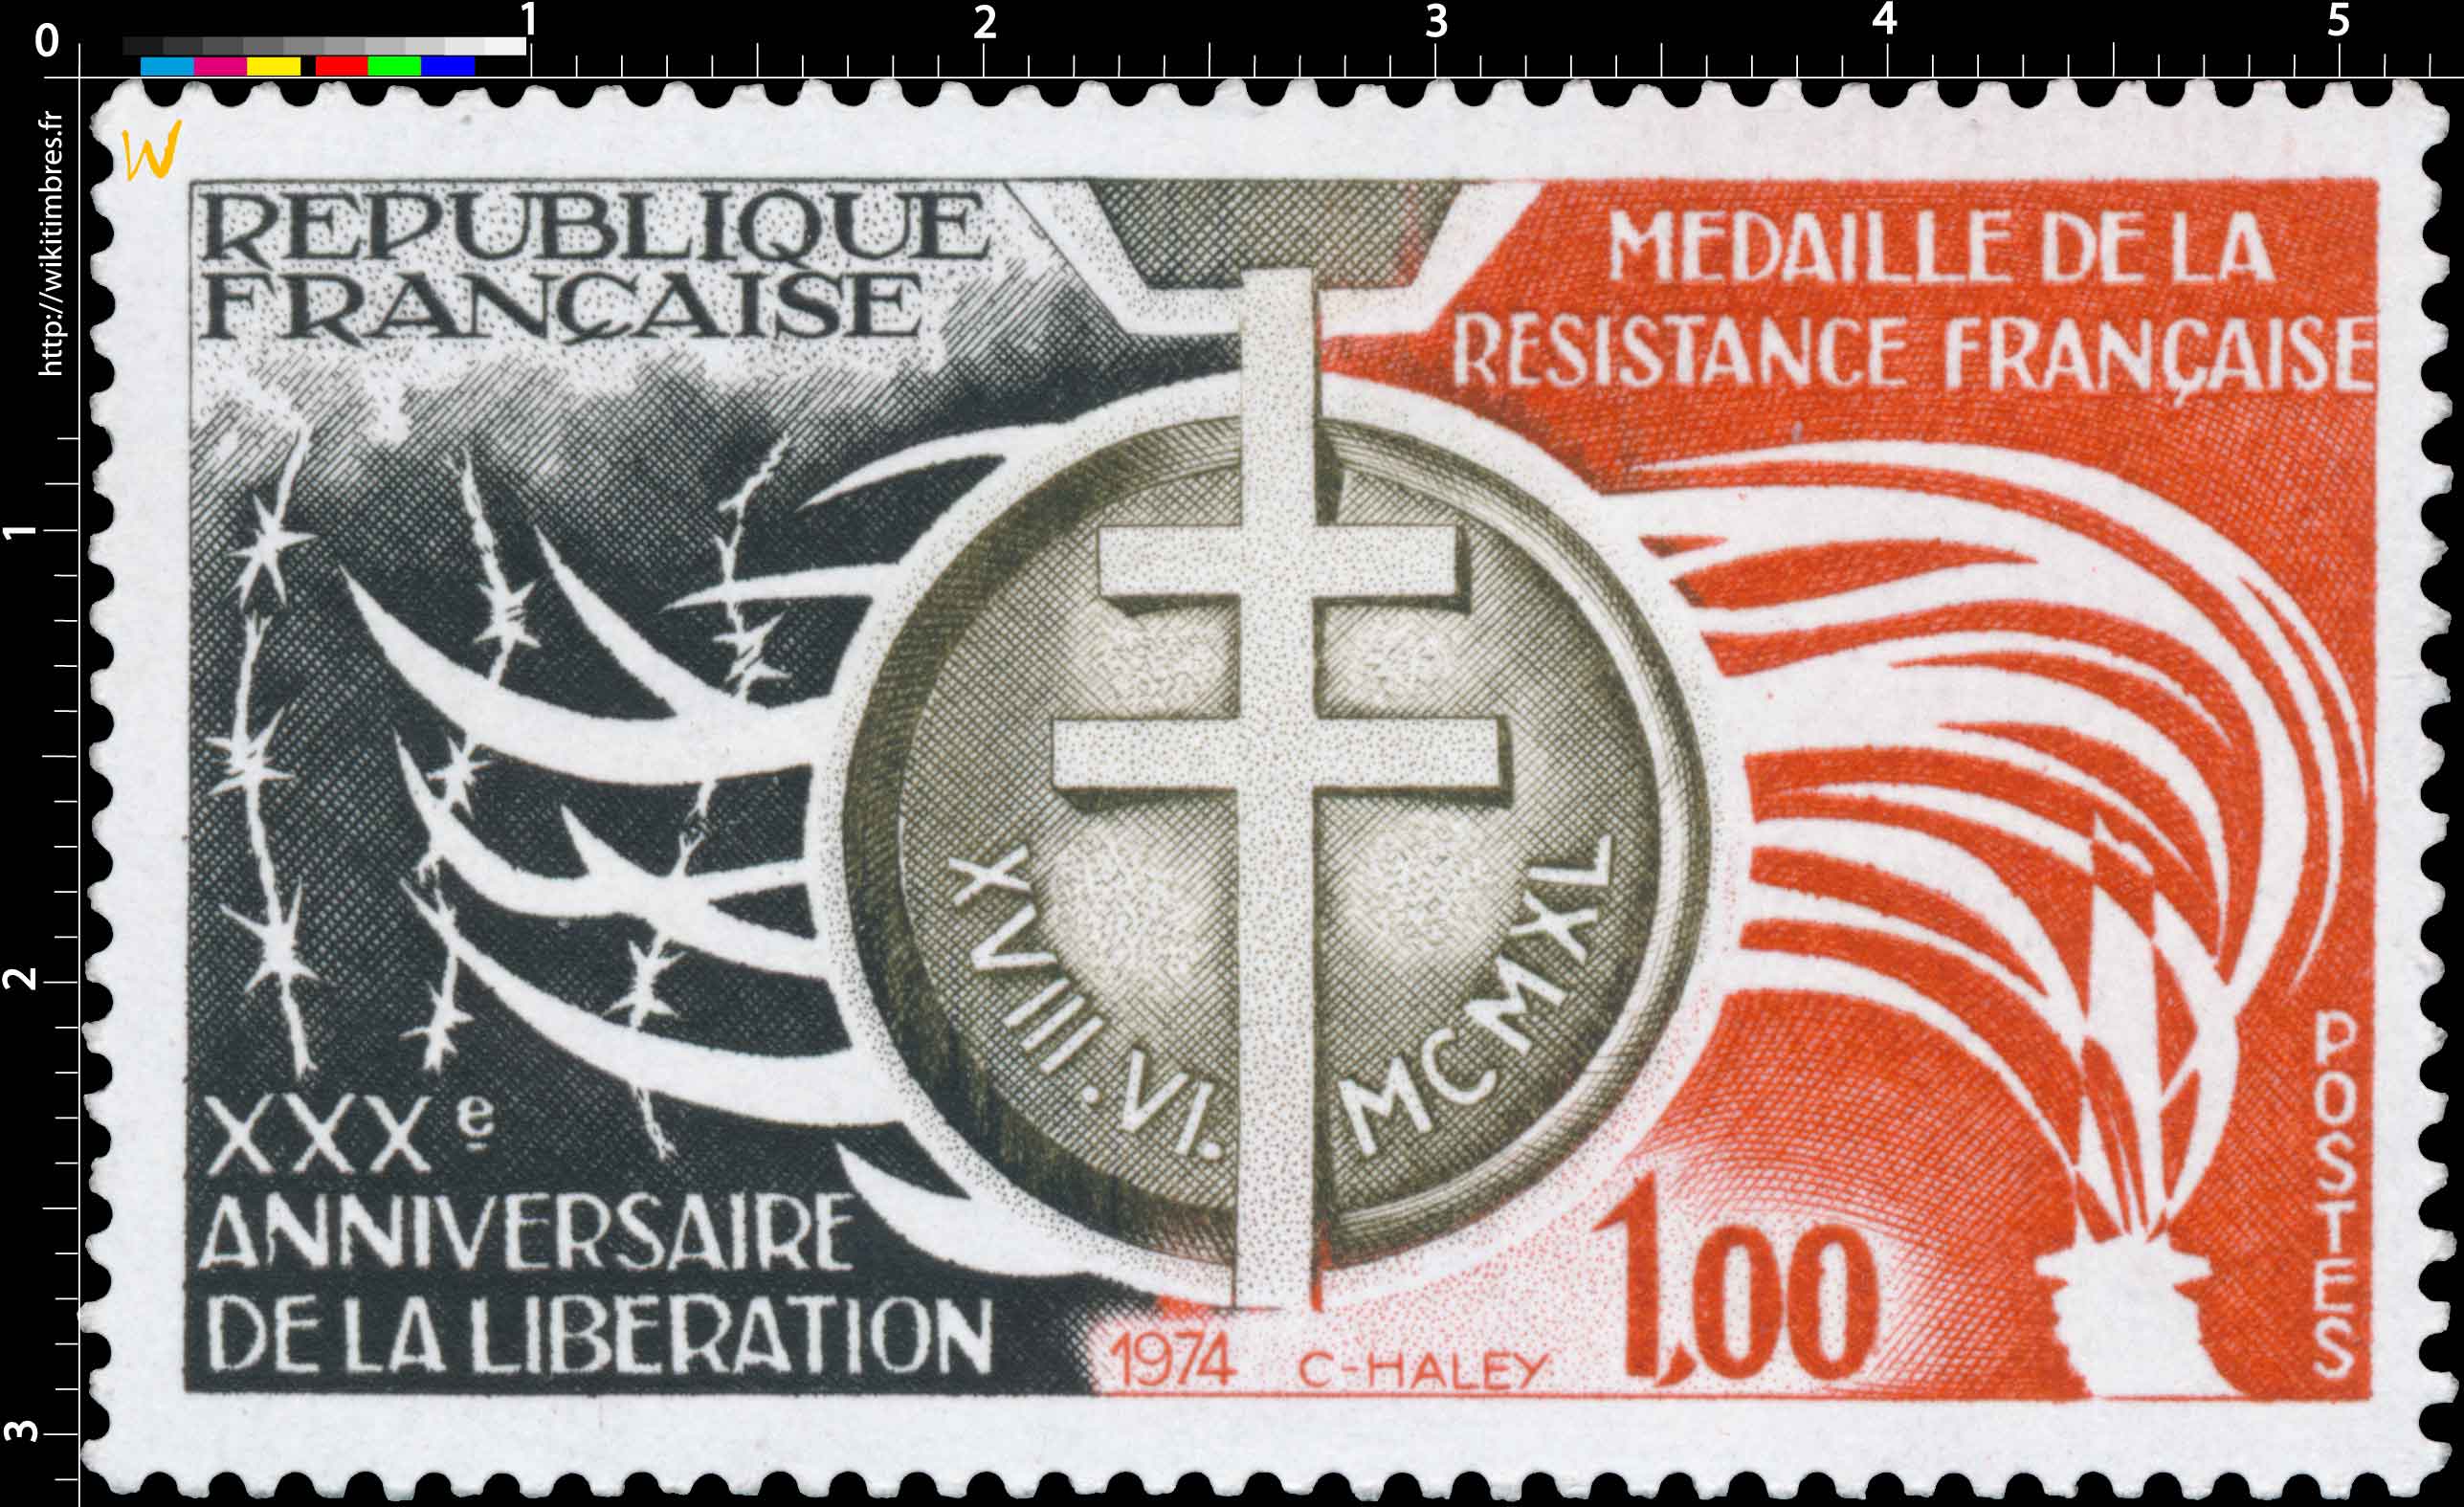 1974 XXXE ANNIVERSAIRE DE LA LIBÉRATION MÉDAILLE DE LA RESISTANCE FRANÇAISE